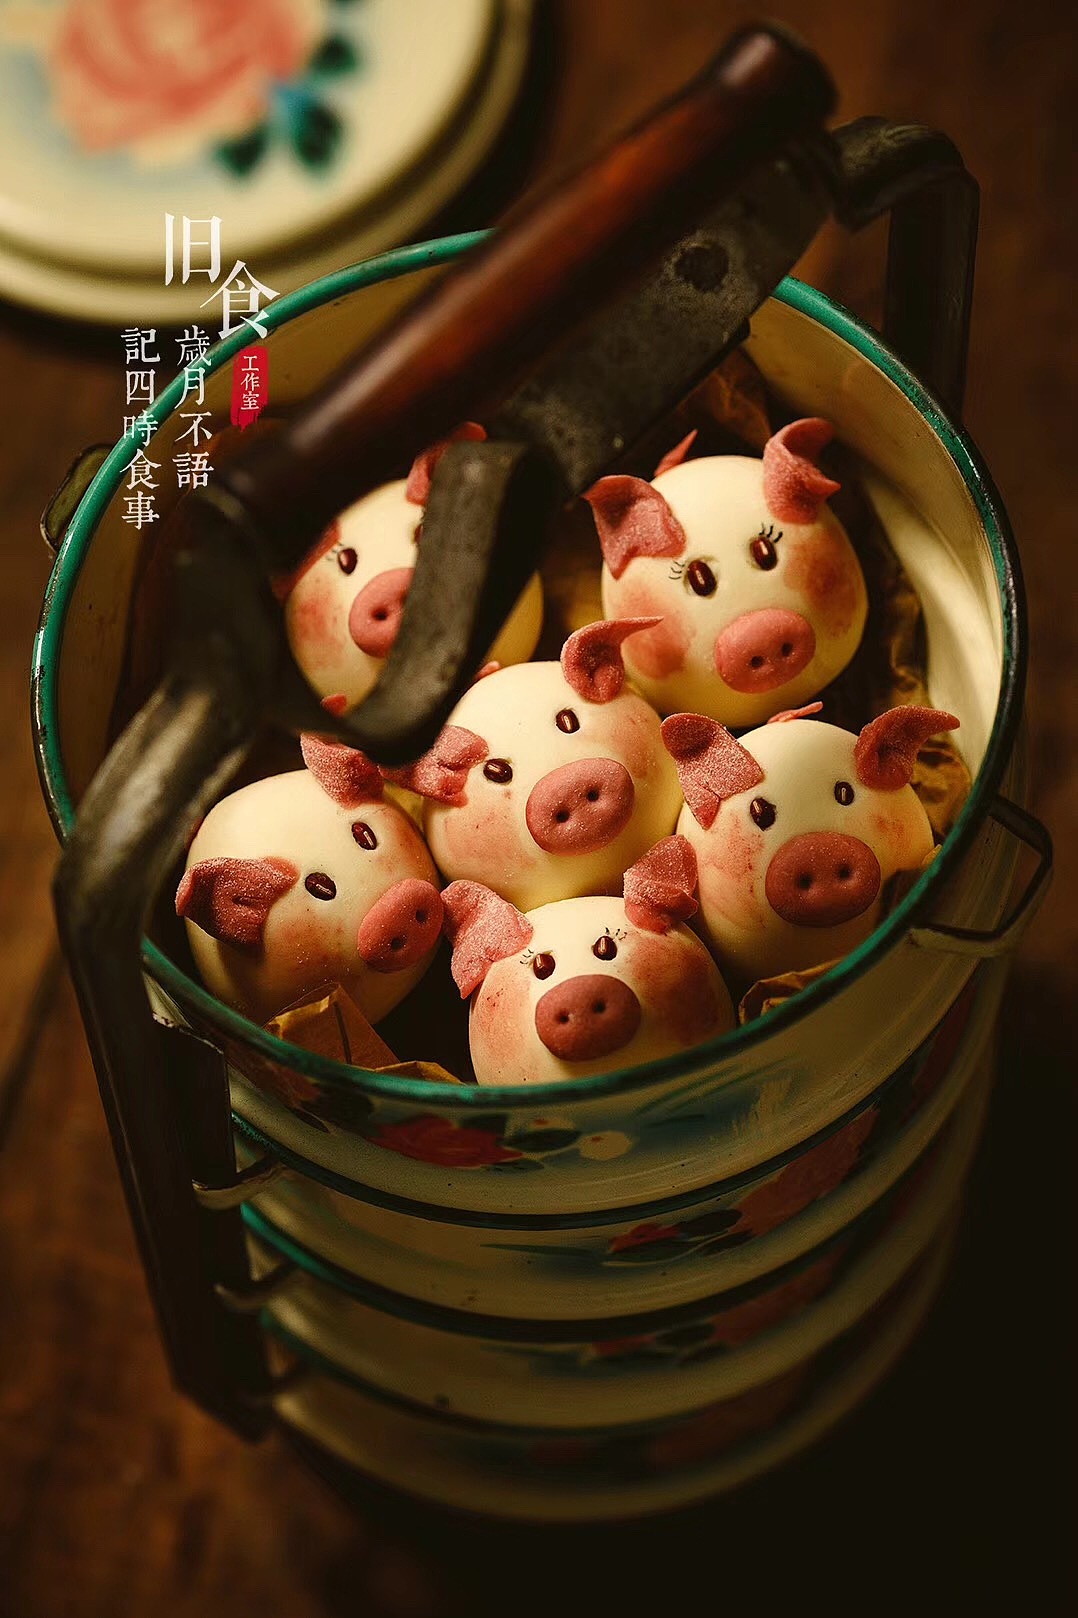 春节回家一定要做一笼“小猪包子”好吃又可爱，一出炉瞬间就被萌化了！_哔哩哔哩 (゜-゜)つロ 干杯~-bilibili